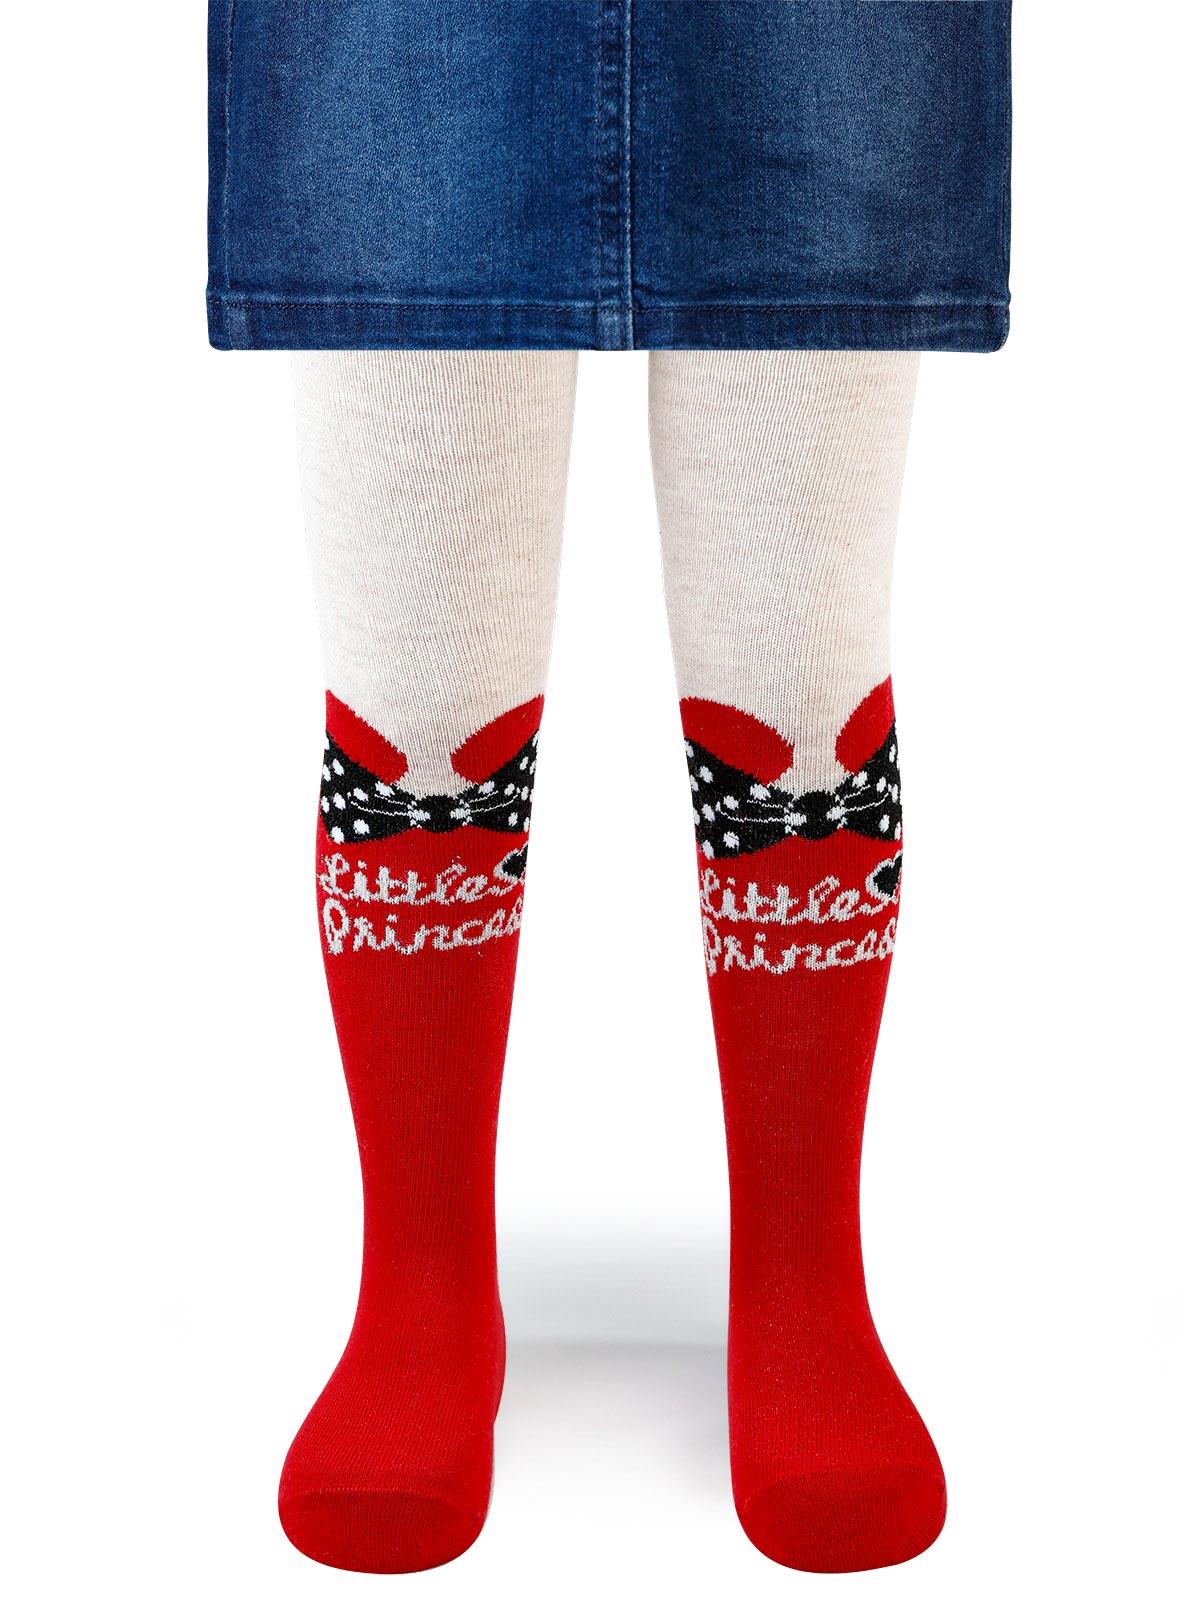 Artı Kız Çocuk Taçlı Külotlu Çorap 3-9 Yaş Kırmızı